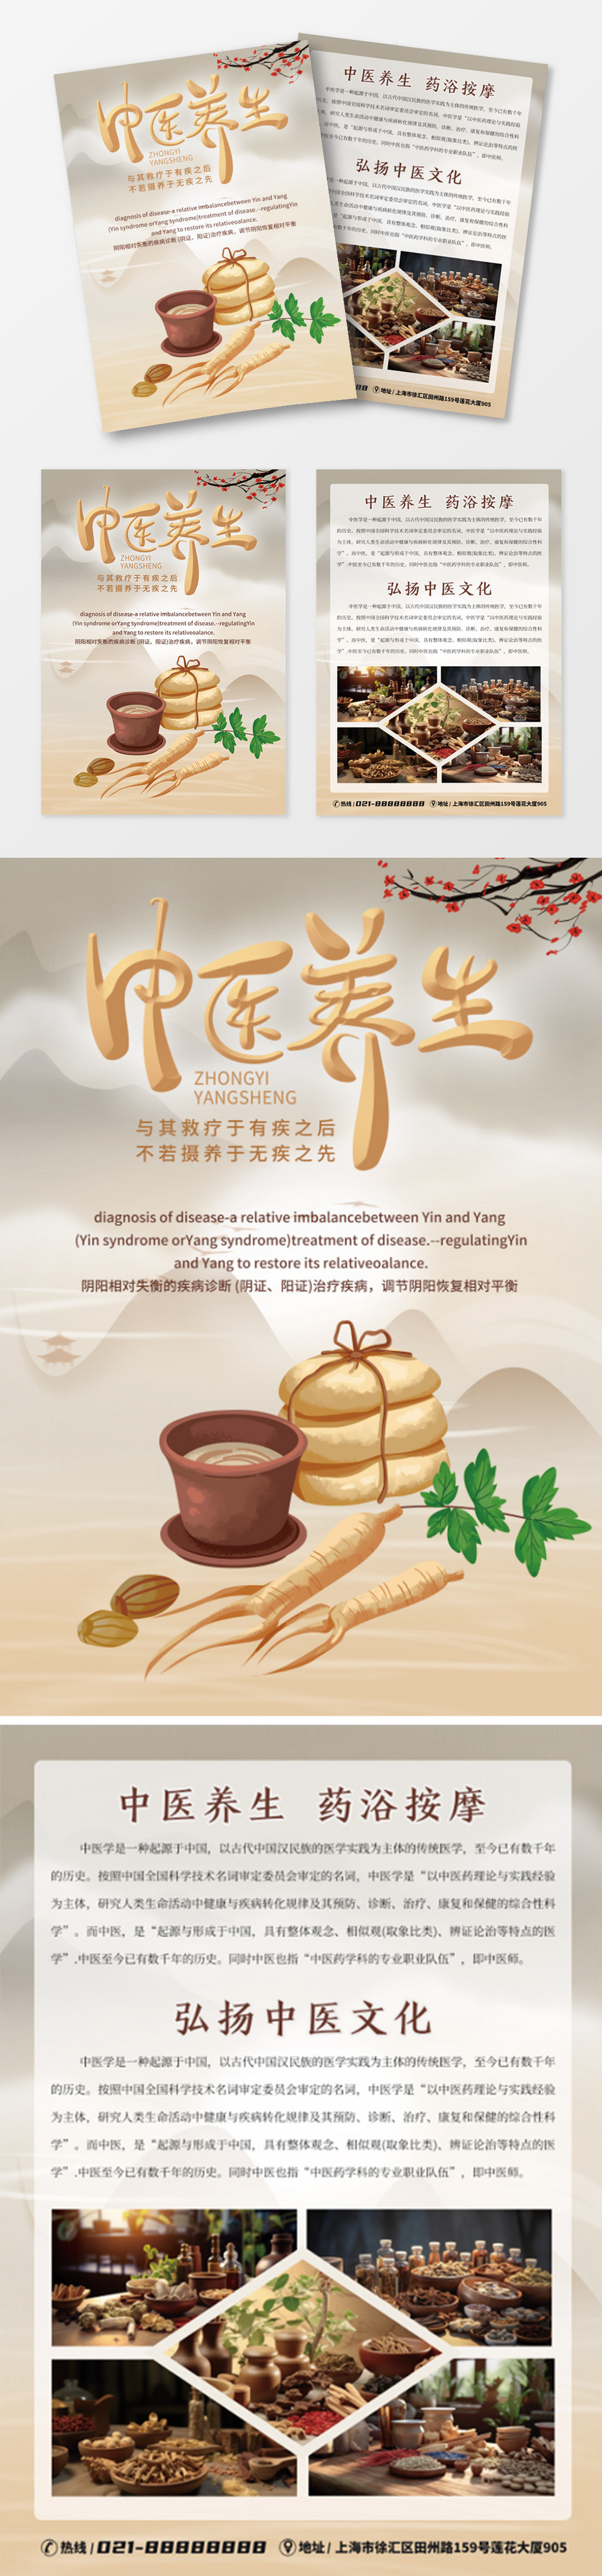 中国风中医中药养生文化宣传单设计